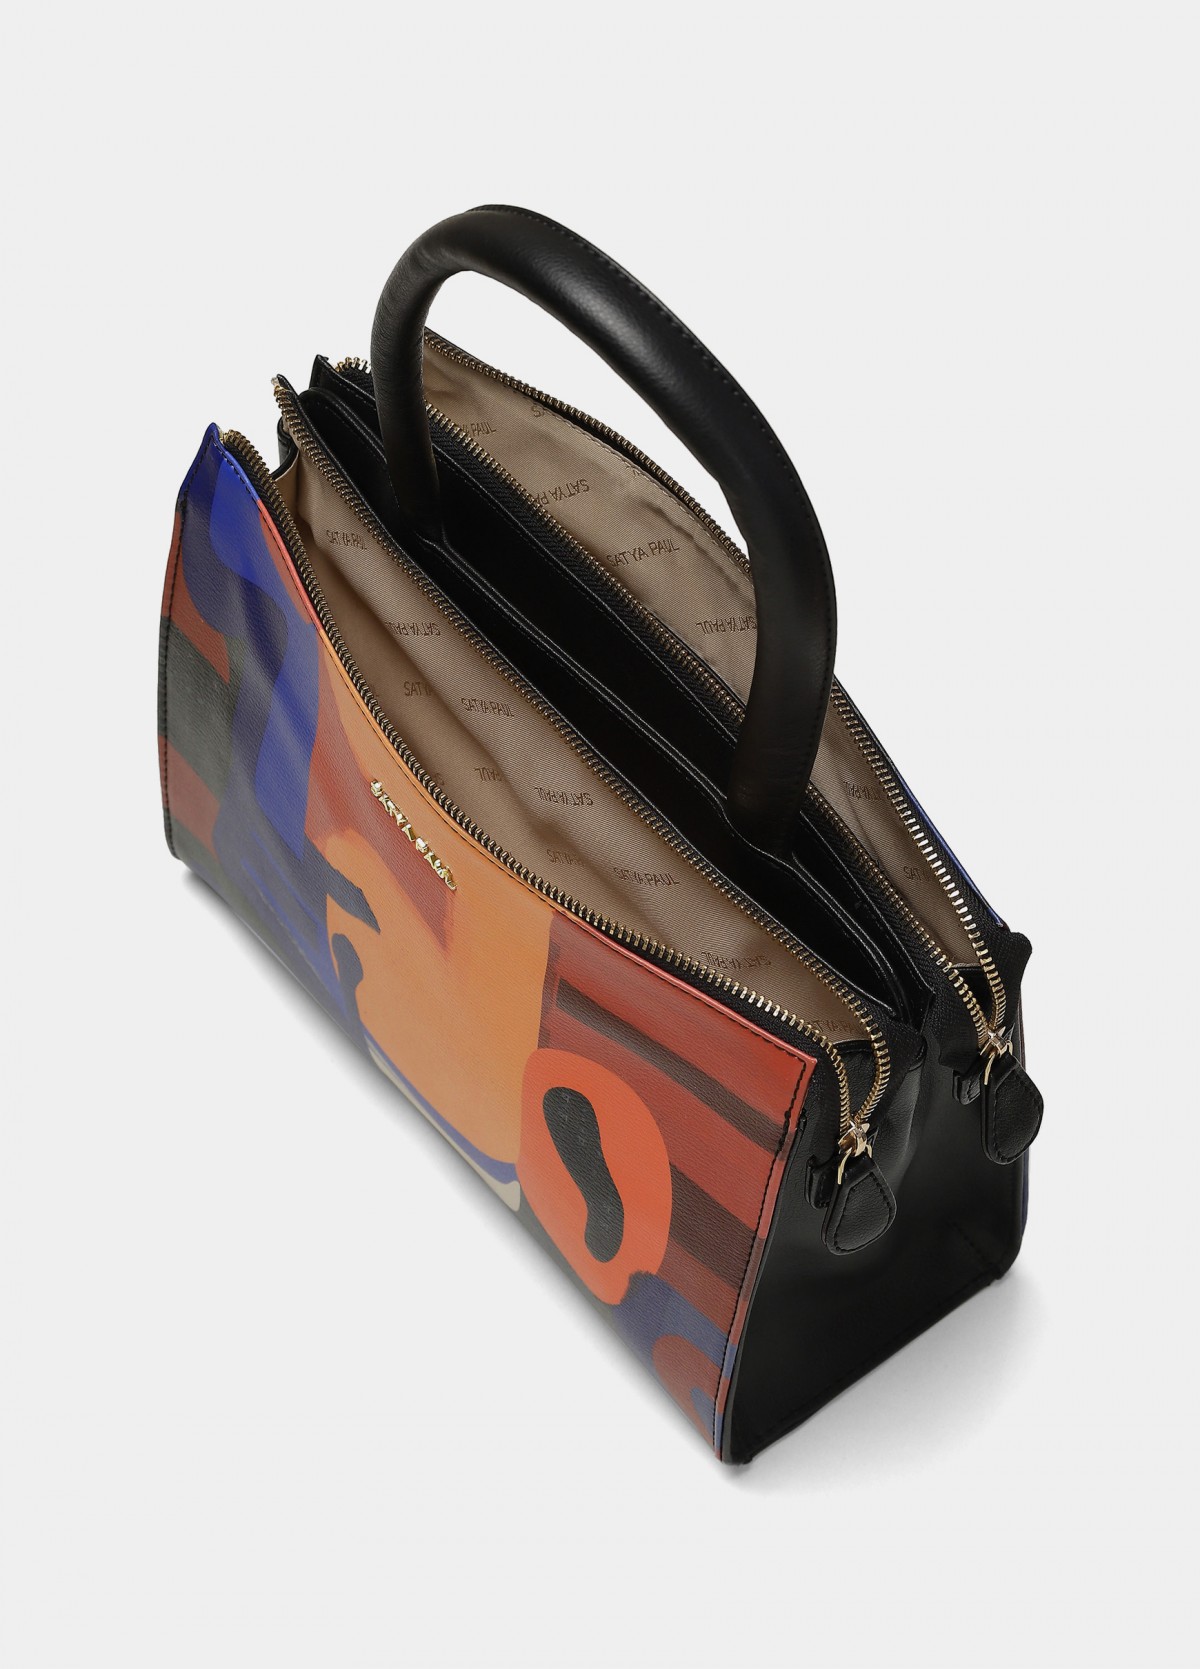 The Contemporary Bag